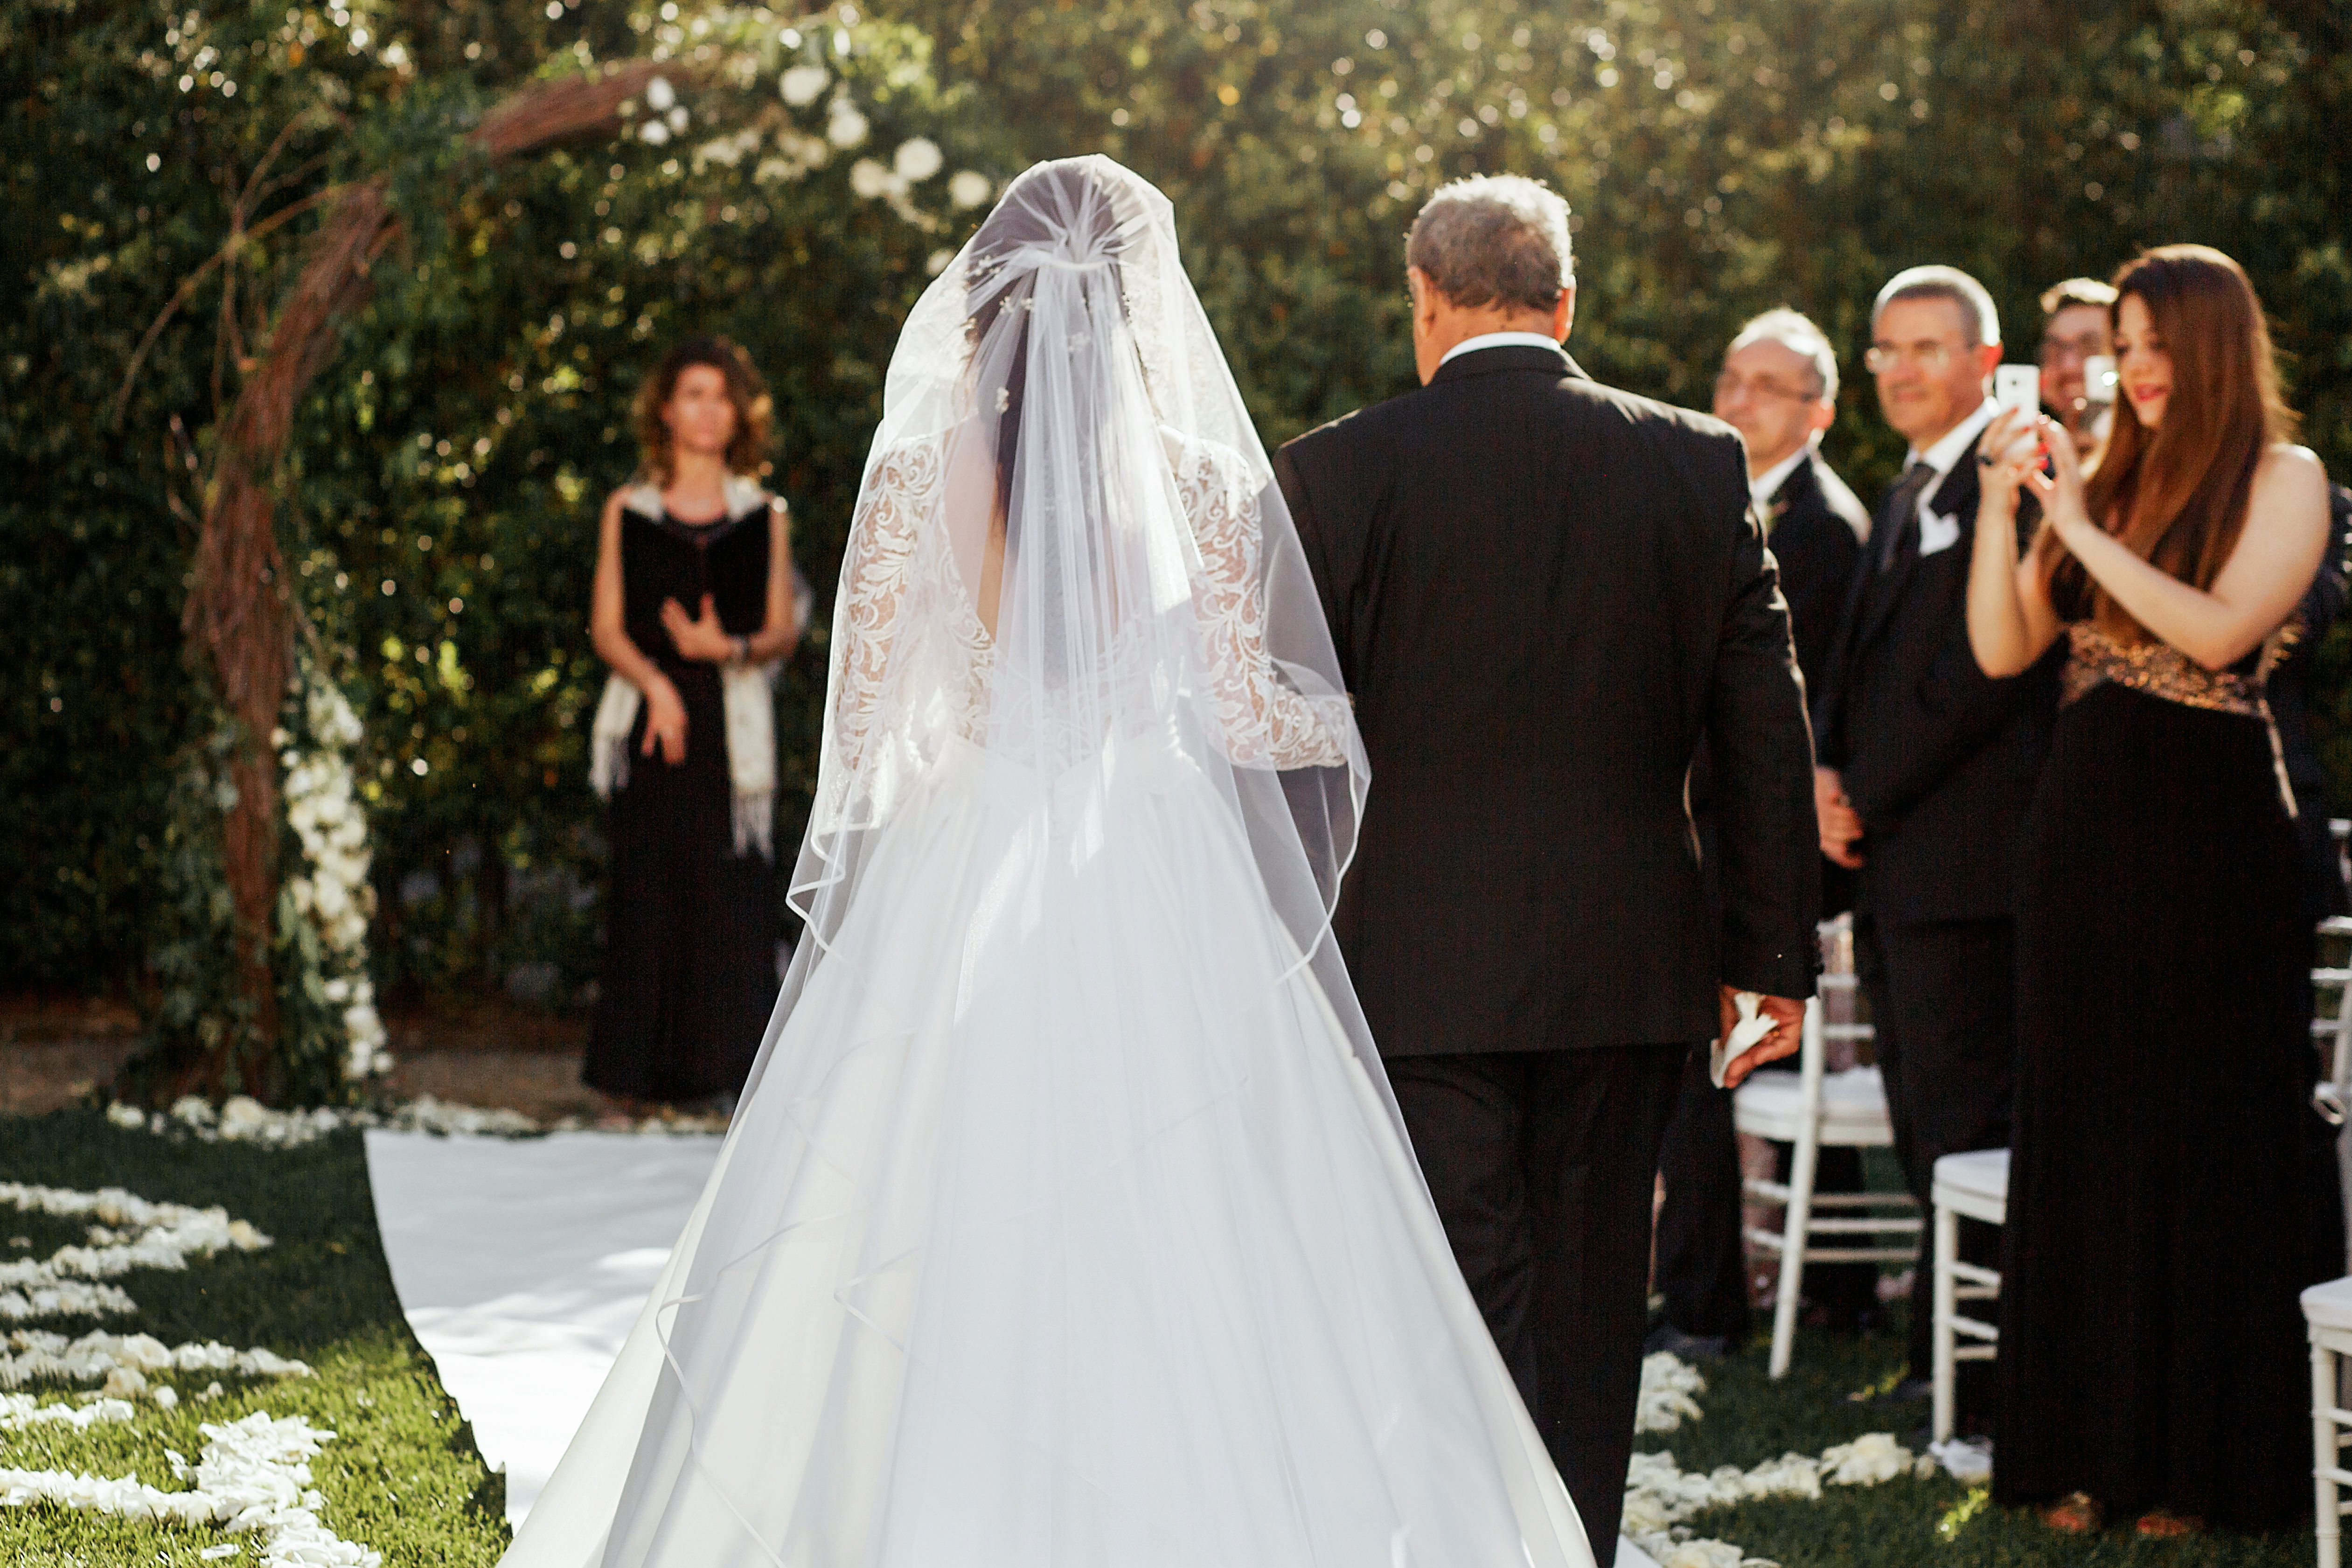 Père accompagnant sa fille dans l'allée le jour de son mariage | Source Shutterstock